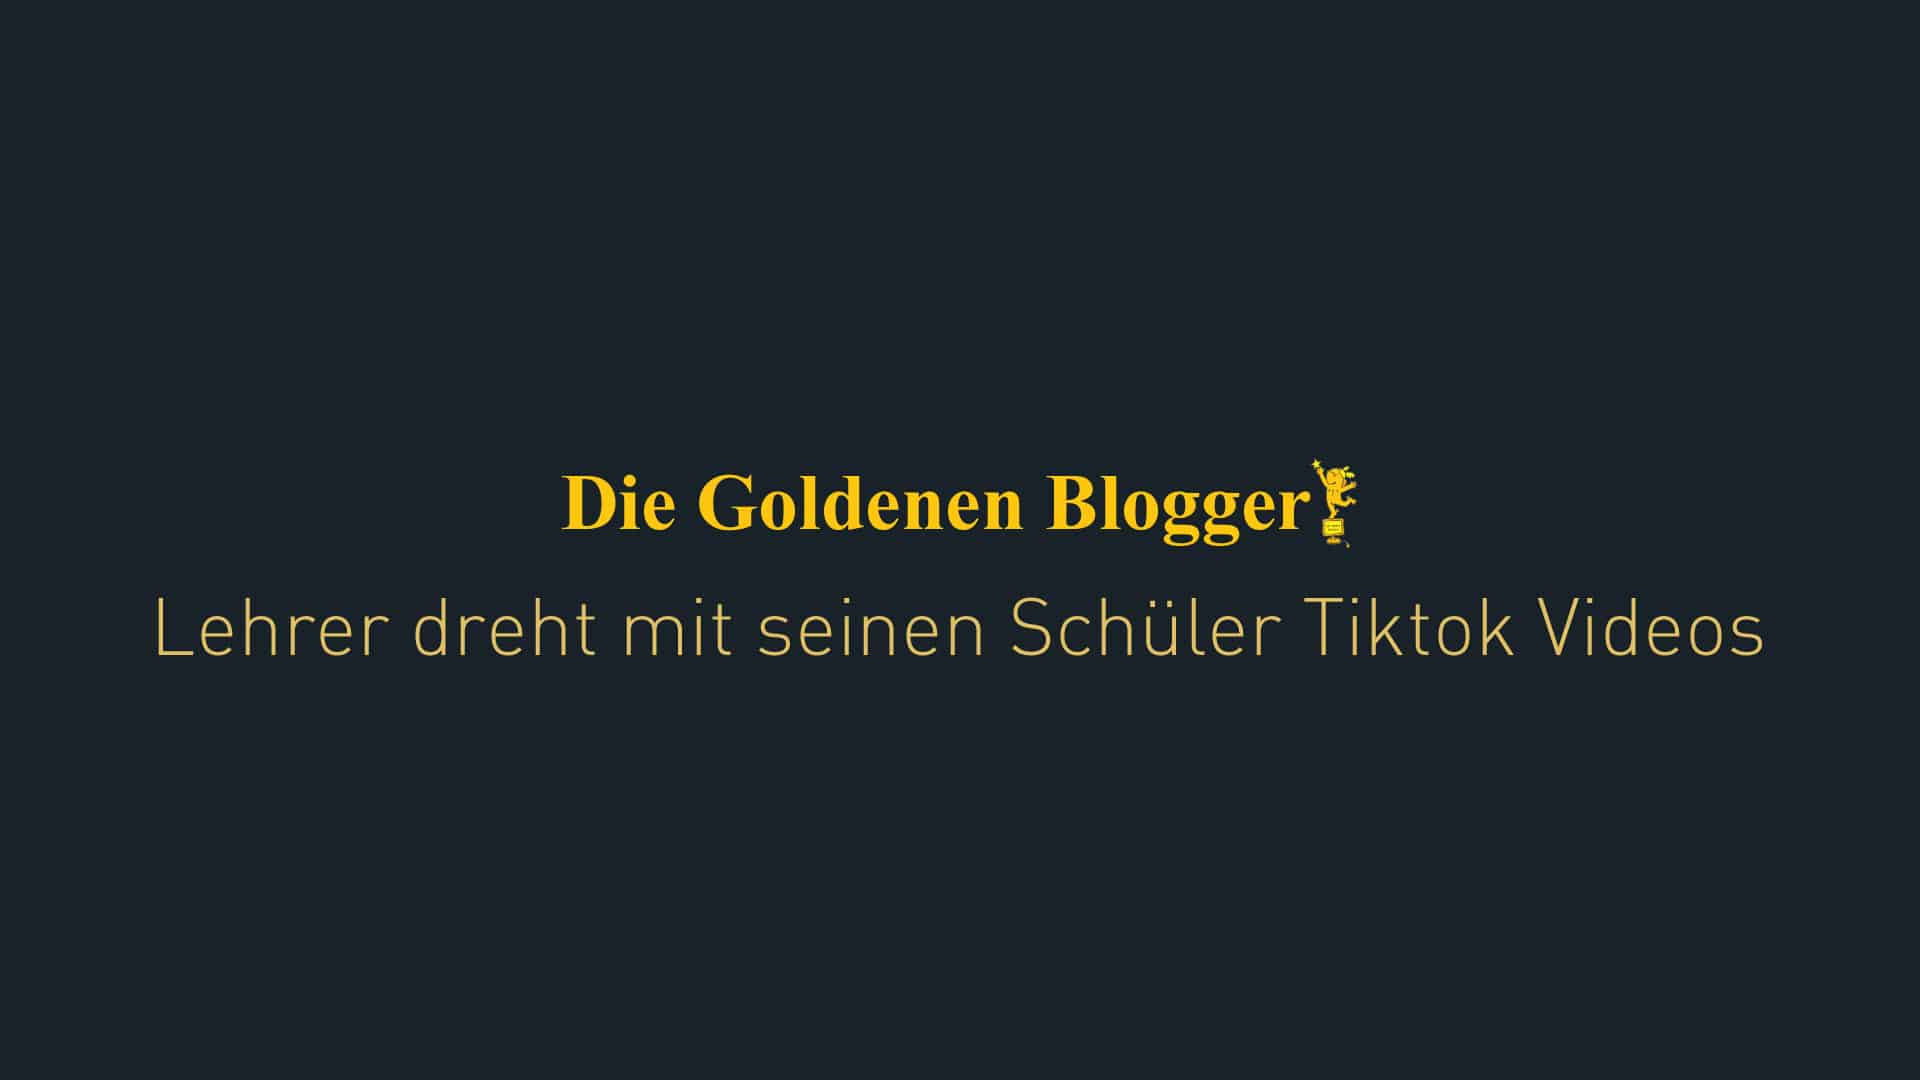 Goldene Blogger nominierung für Herr Grimm und seine Schüler für seine Tiktok Videos